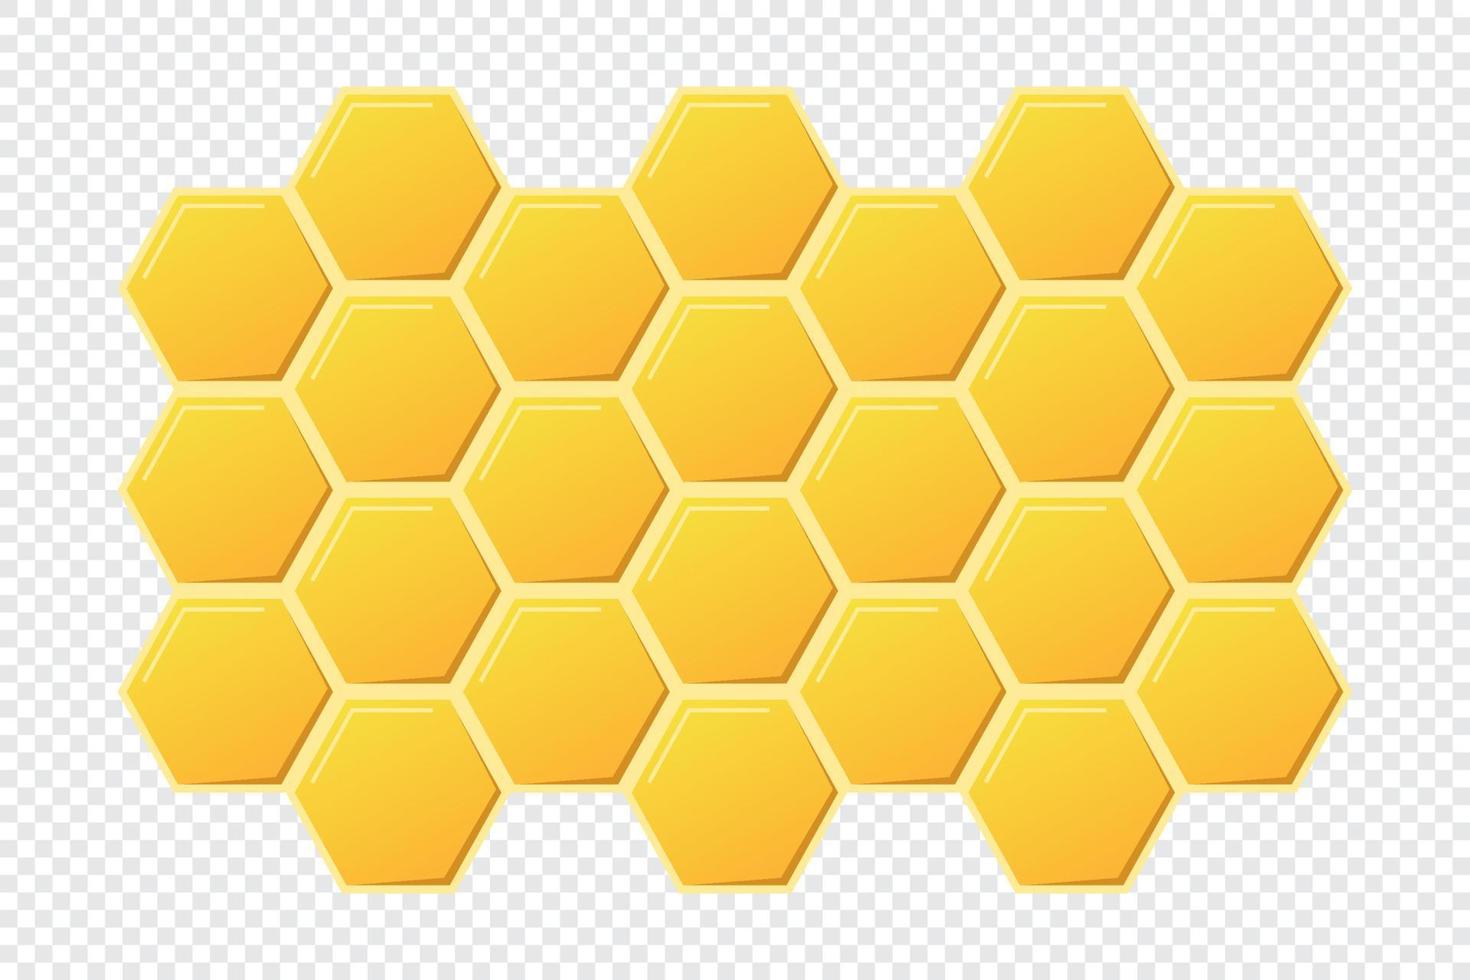 abstract honingraten ontwerp. goud honing zeshoekig cellen textuur. meetkundig bijenkorf zeshoekig honingraten. vector illustratie